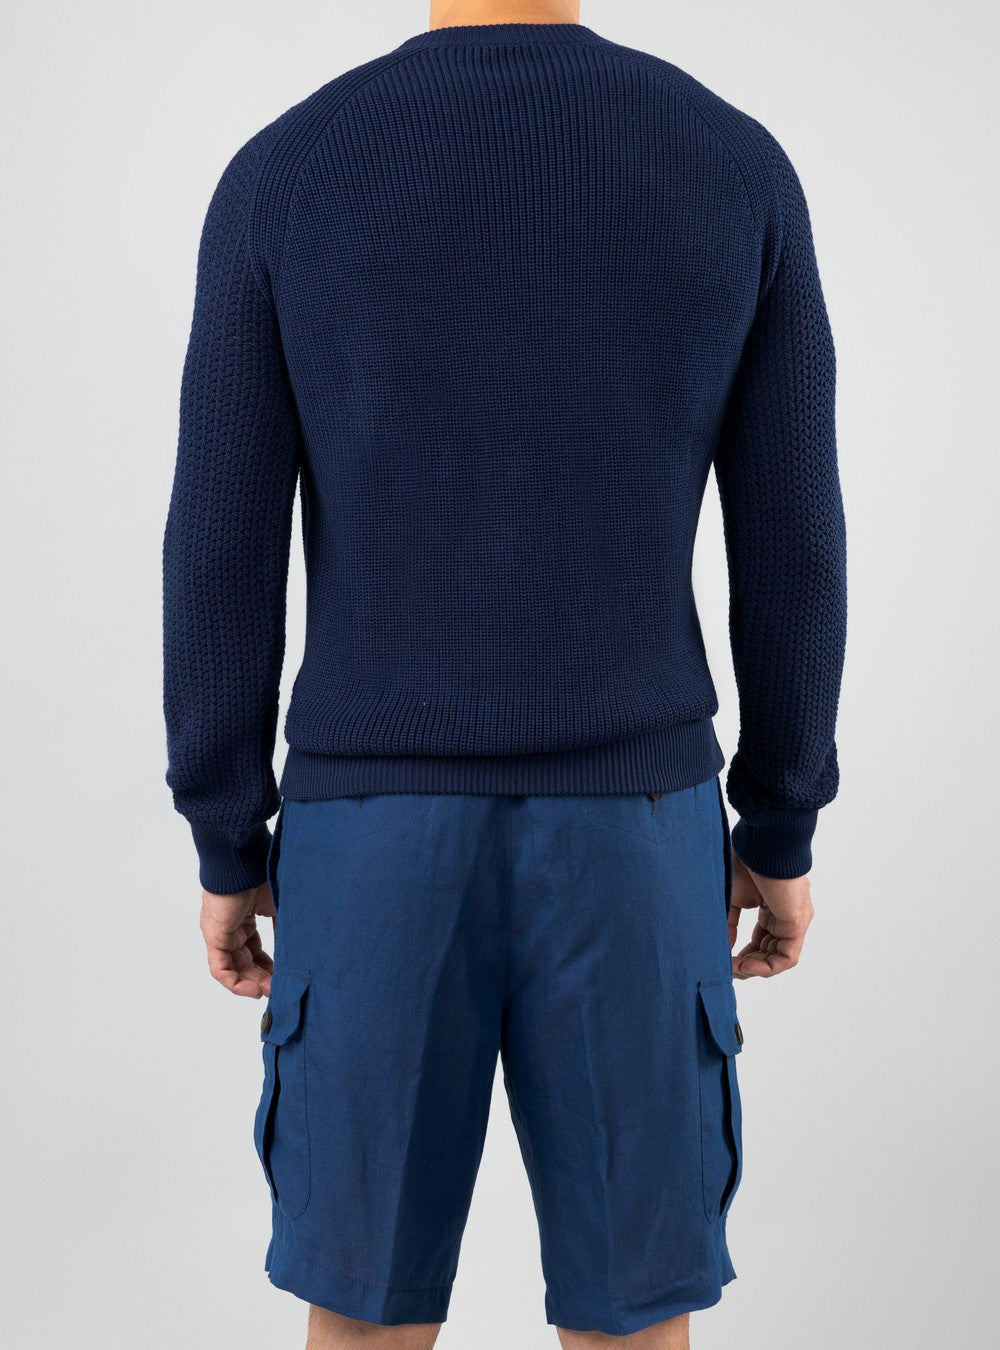 Oceanus Round Neck Sweater in Sea Island Cotton, Cobalt